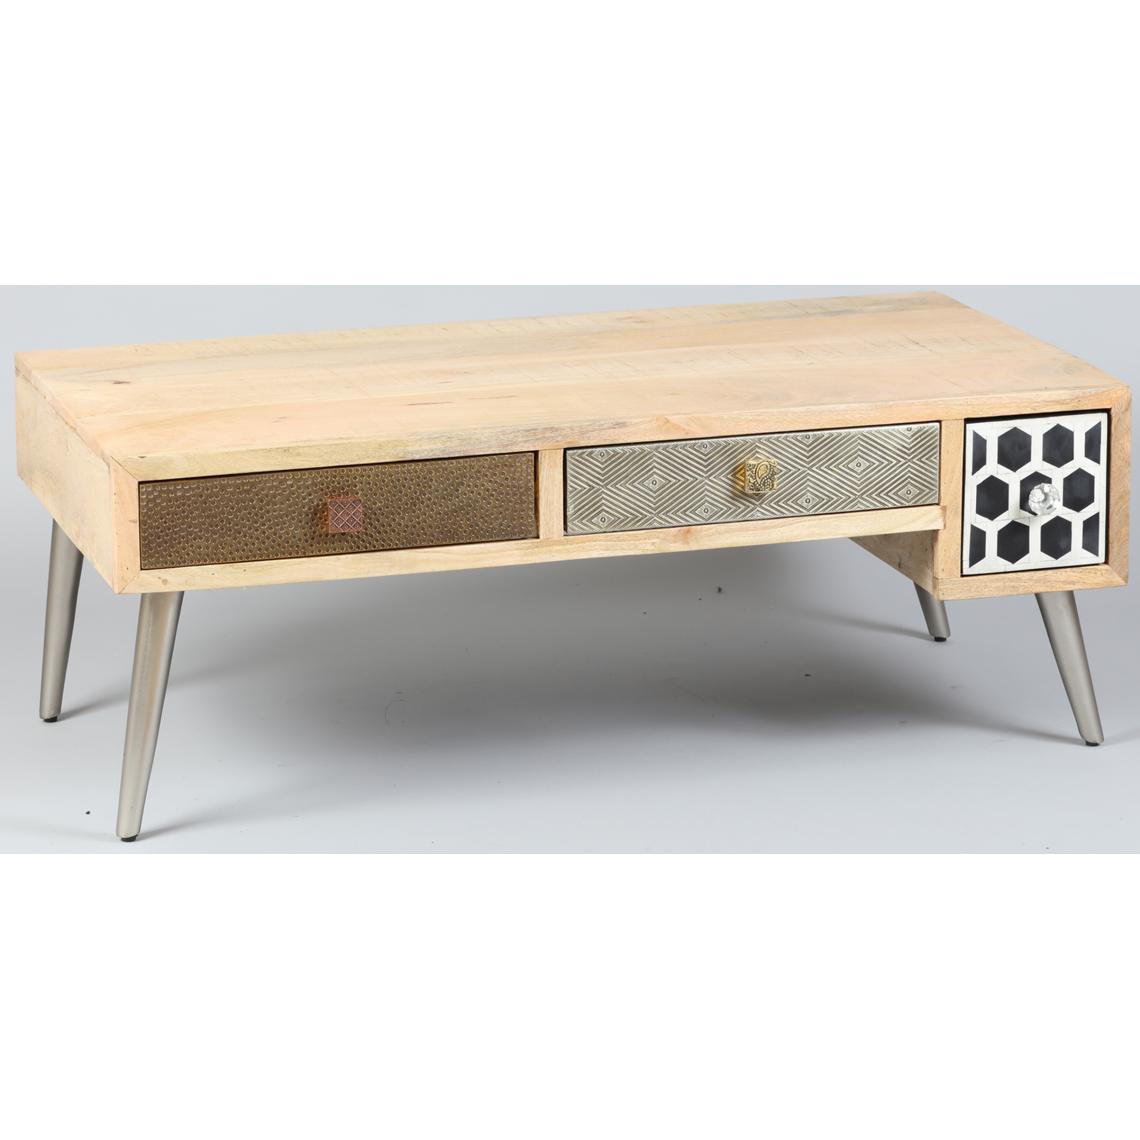 Pegane - Table basse de 4 tiroirs en palissandre - Dim : L115 x P60 x Ht 41 cm - Tables basses